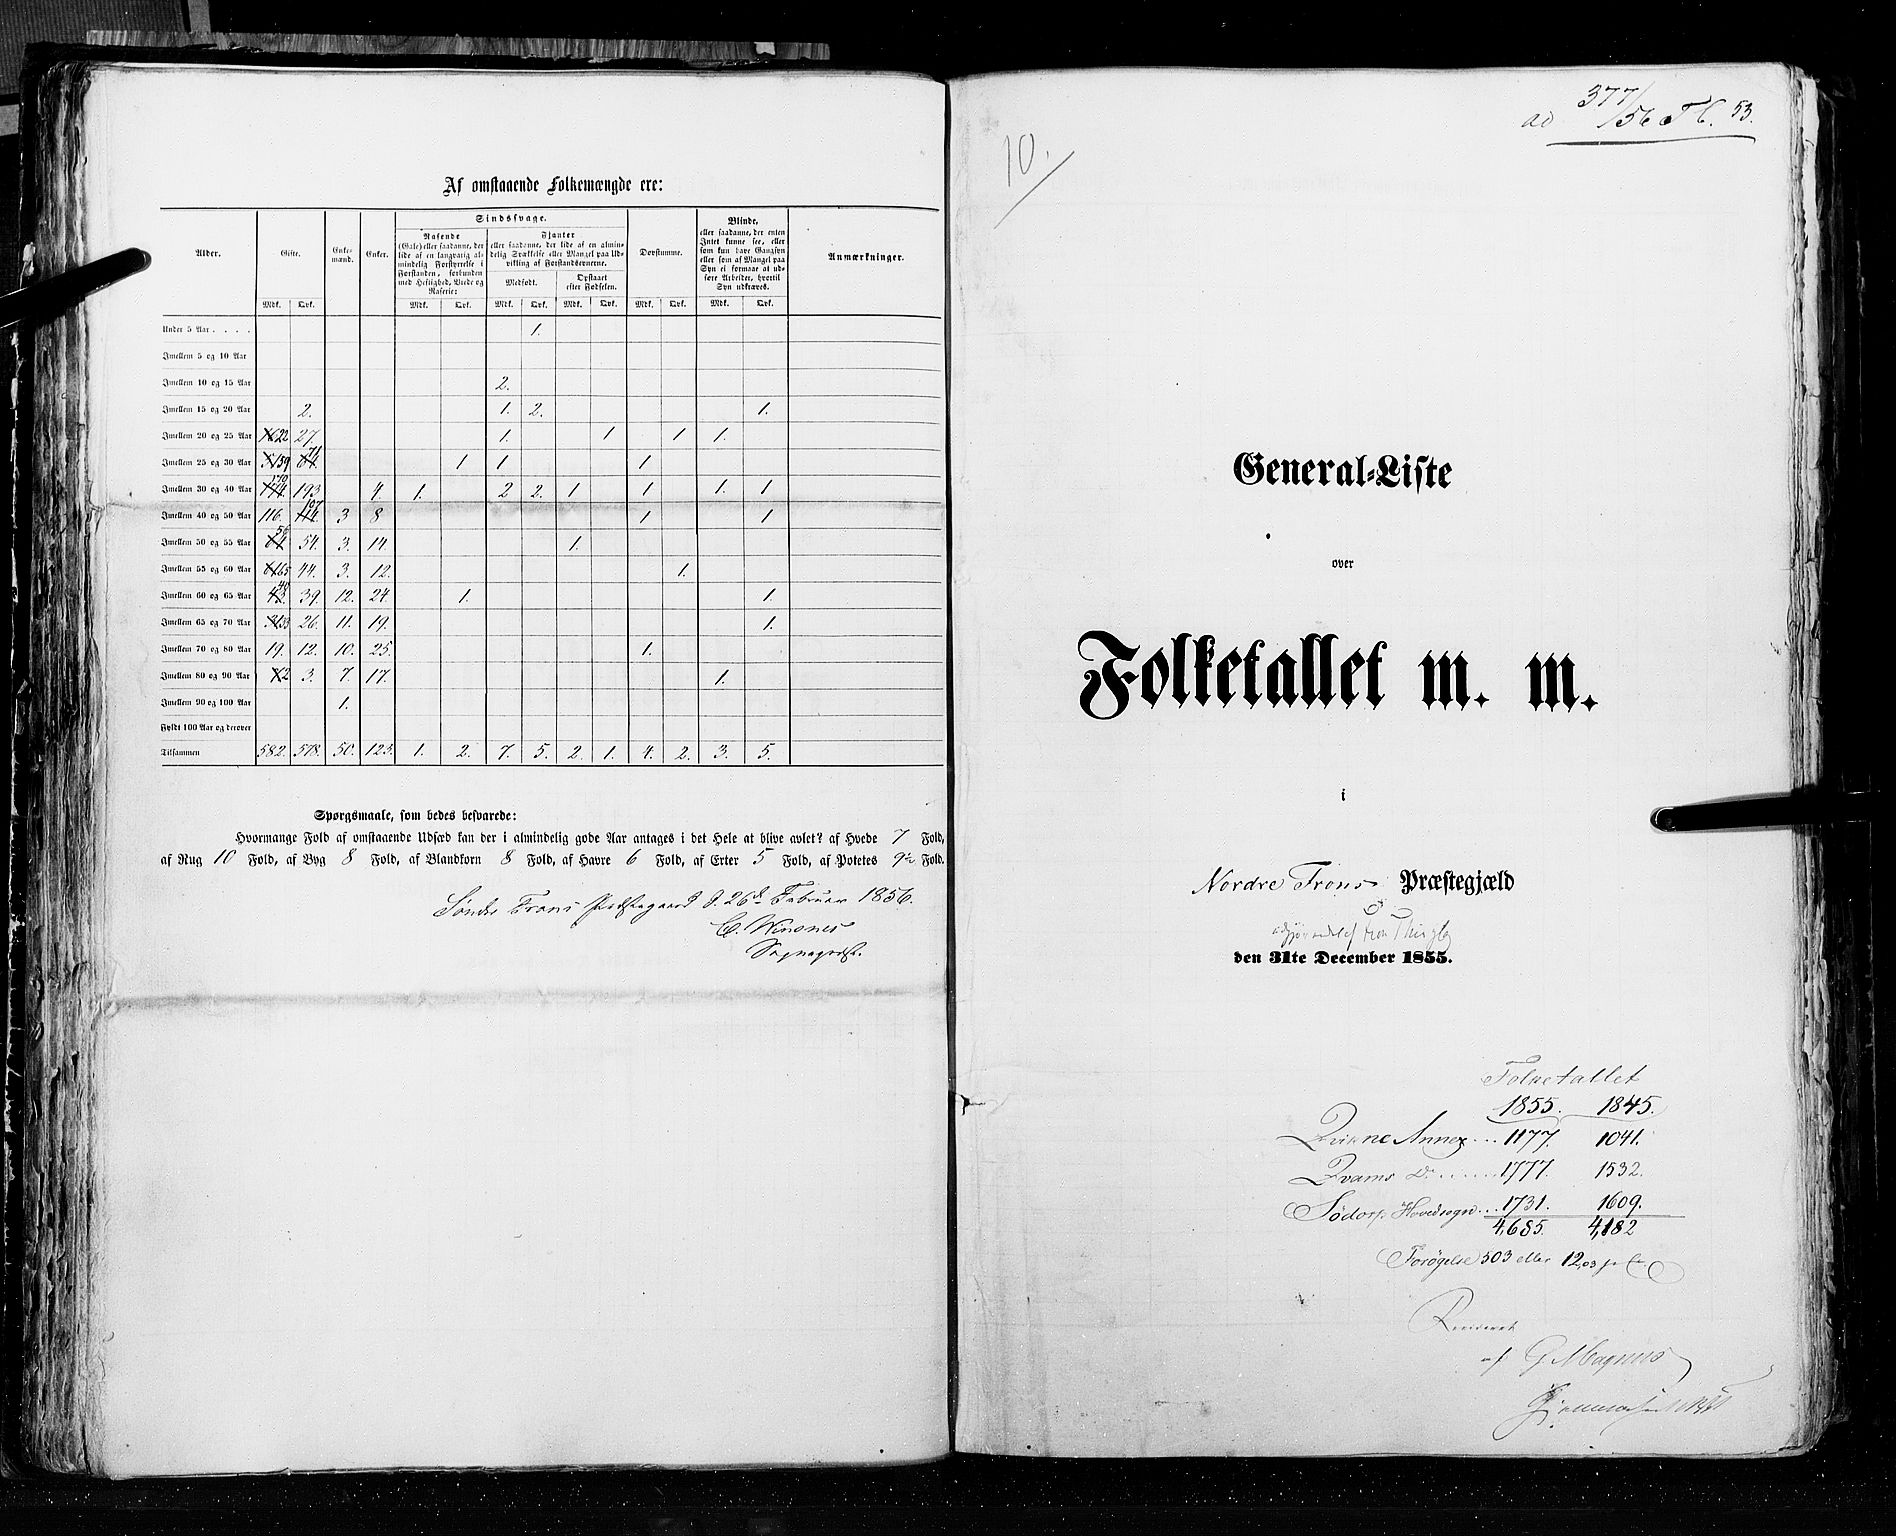 RA, Folketellingen 1855, bind 2: Kristians amt, Buskerud amt og Jarlsberg og Larvik amt, 1855, s. 53